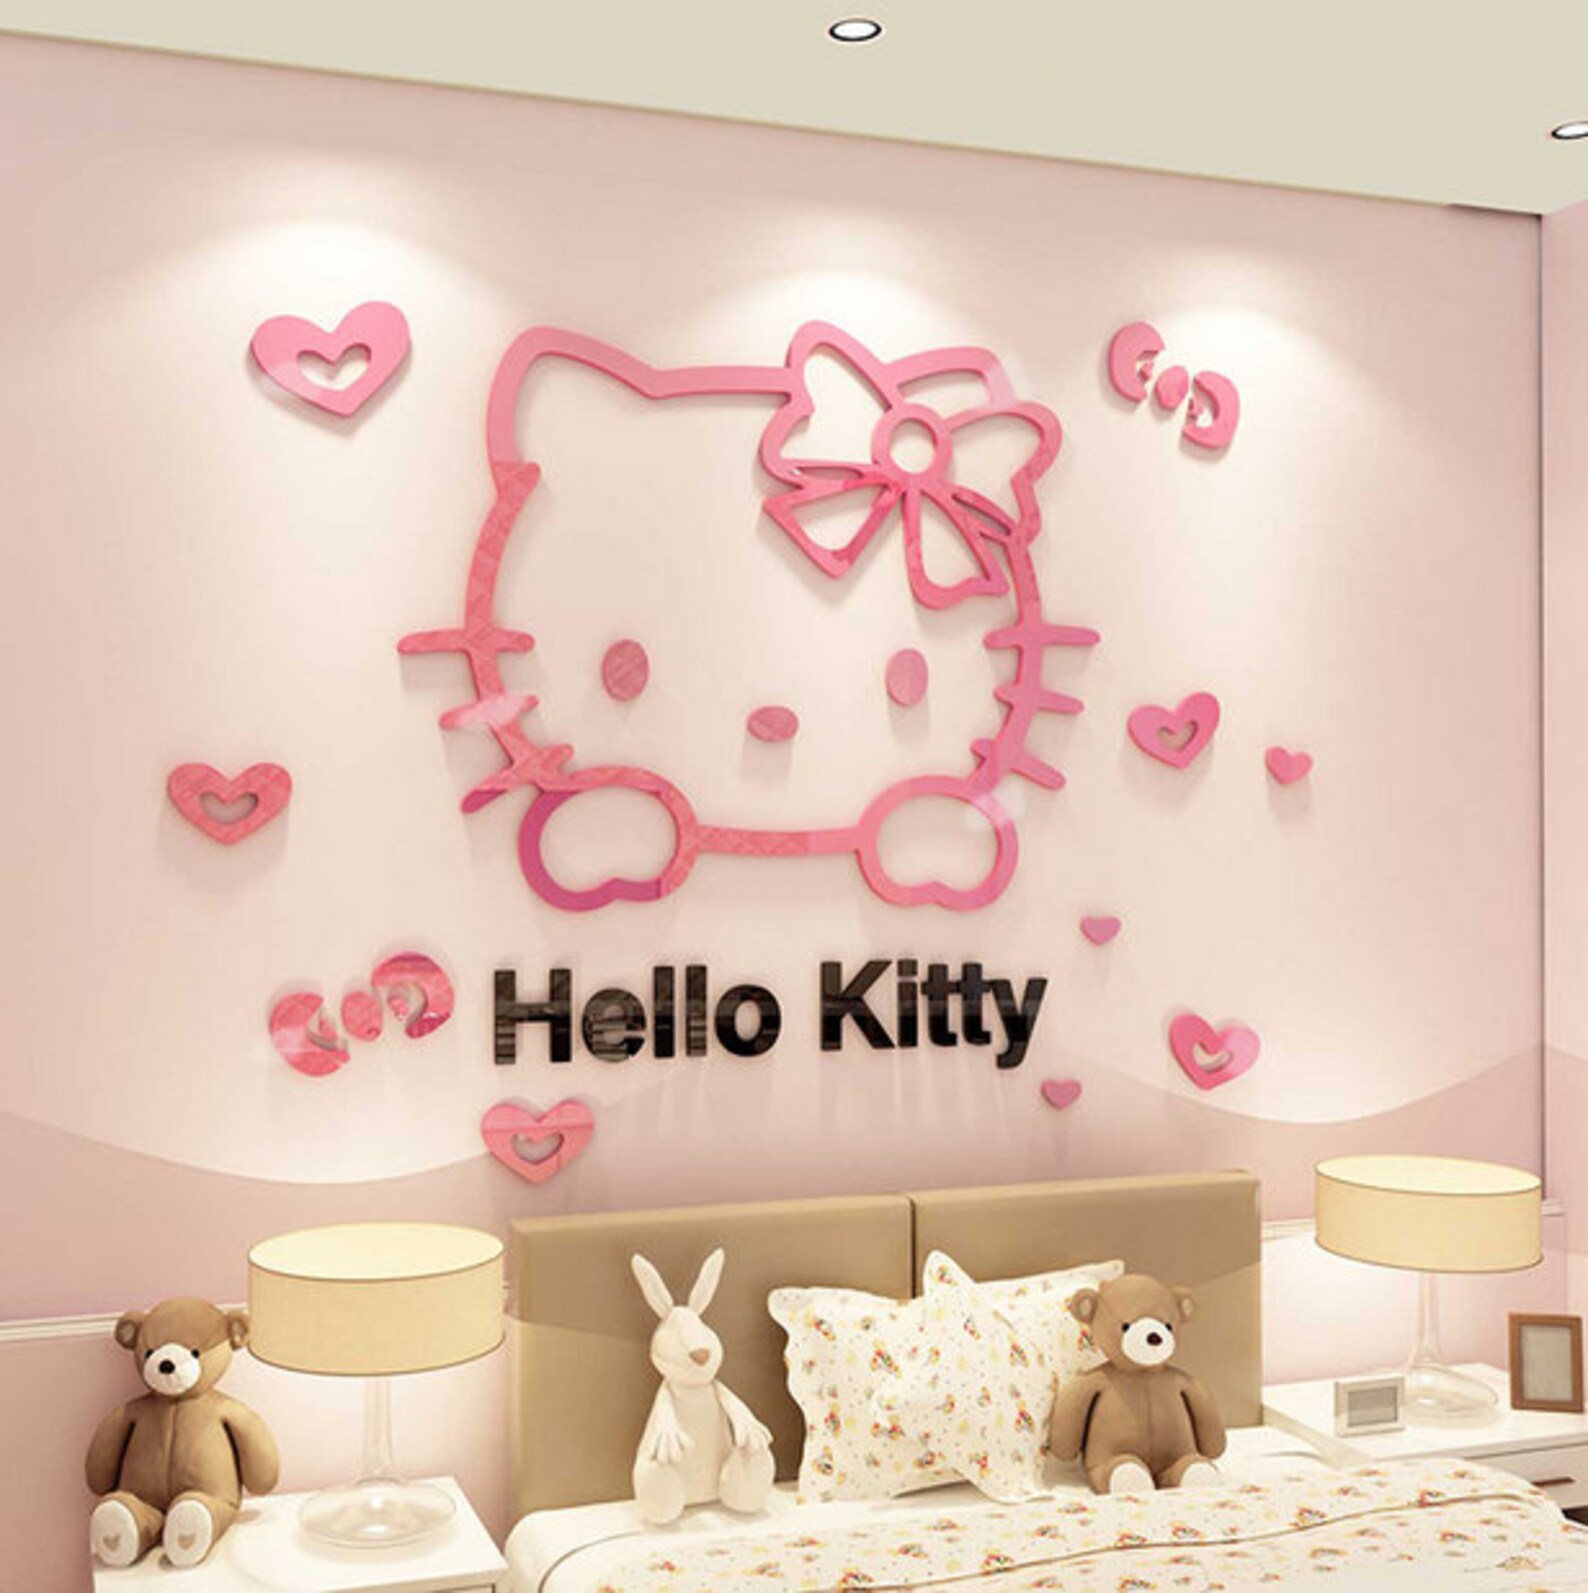 Про хелло. Комната Хеллоу Китти Эстетика. Хеллоу Китти декор комнаты. Наклейки на стену Хелло Китти. Наклейки на стену hello Kitty.